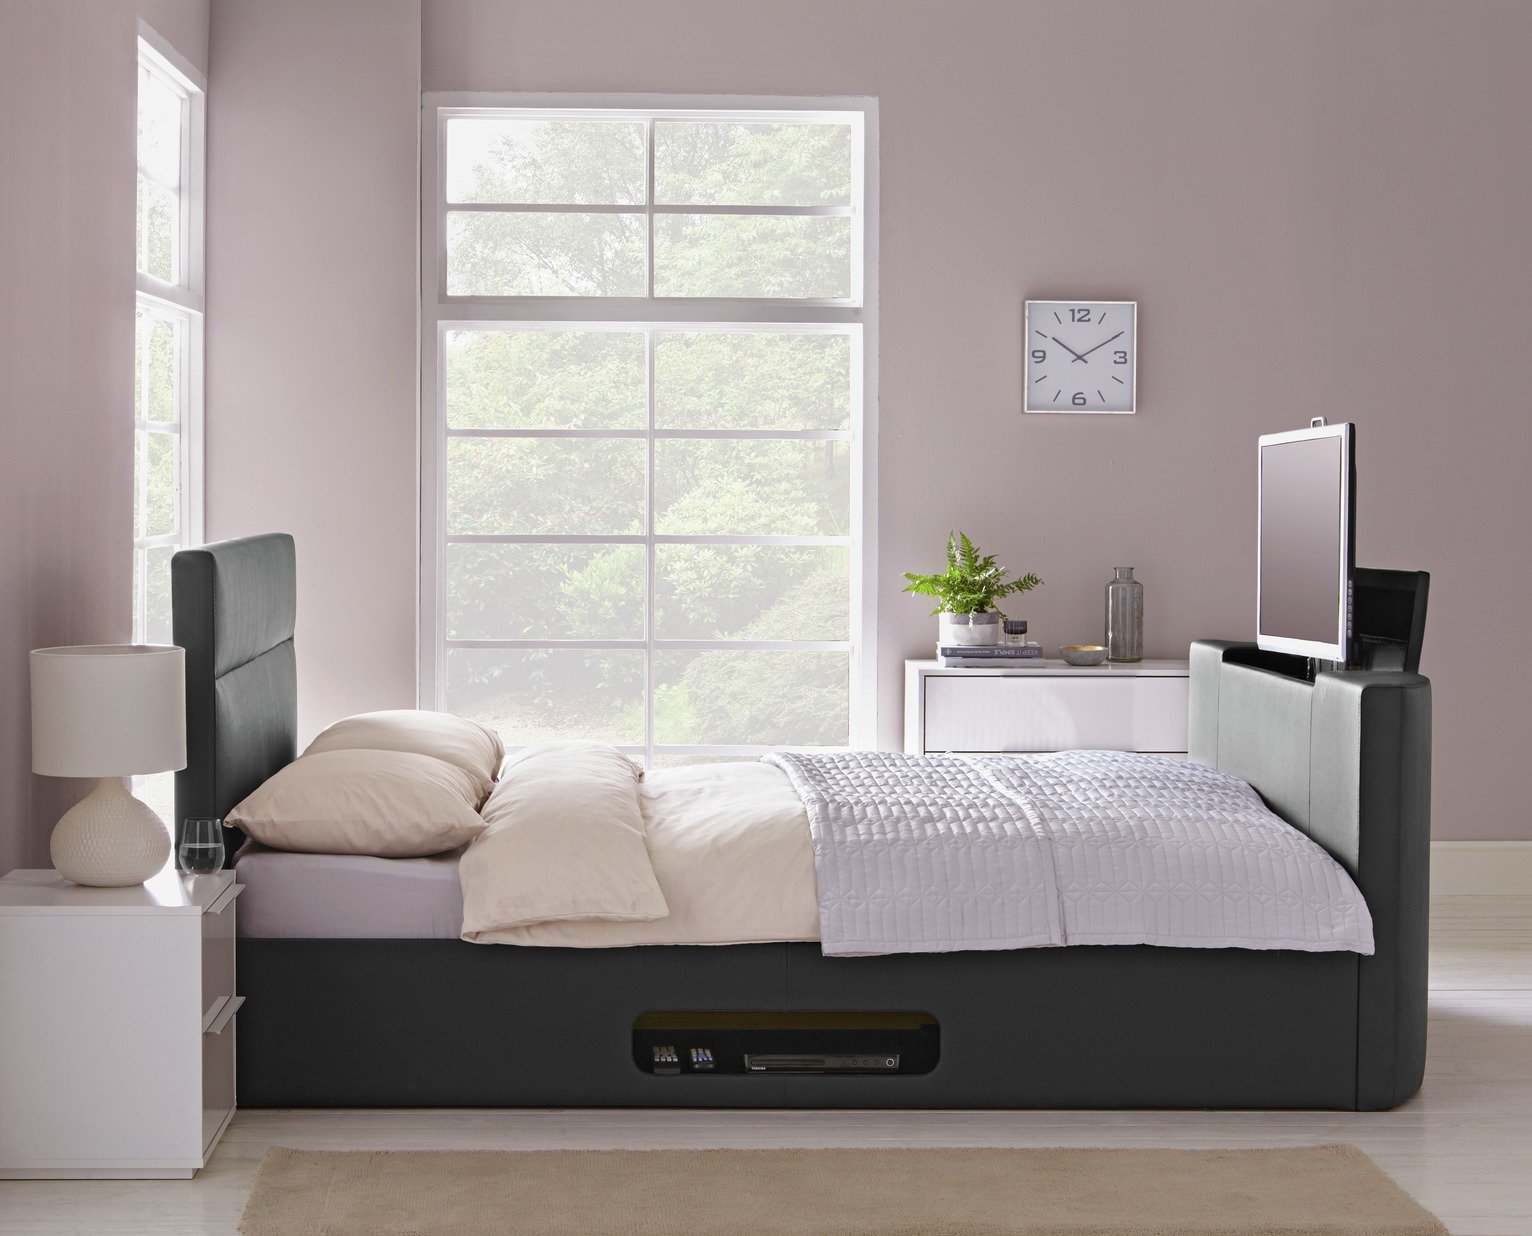 Argos Home Gemini Kingsize TV Bed Frame Review